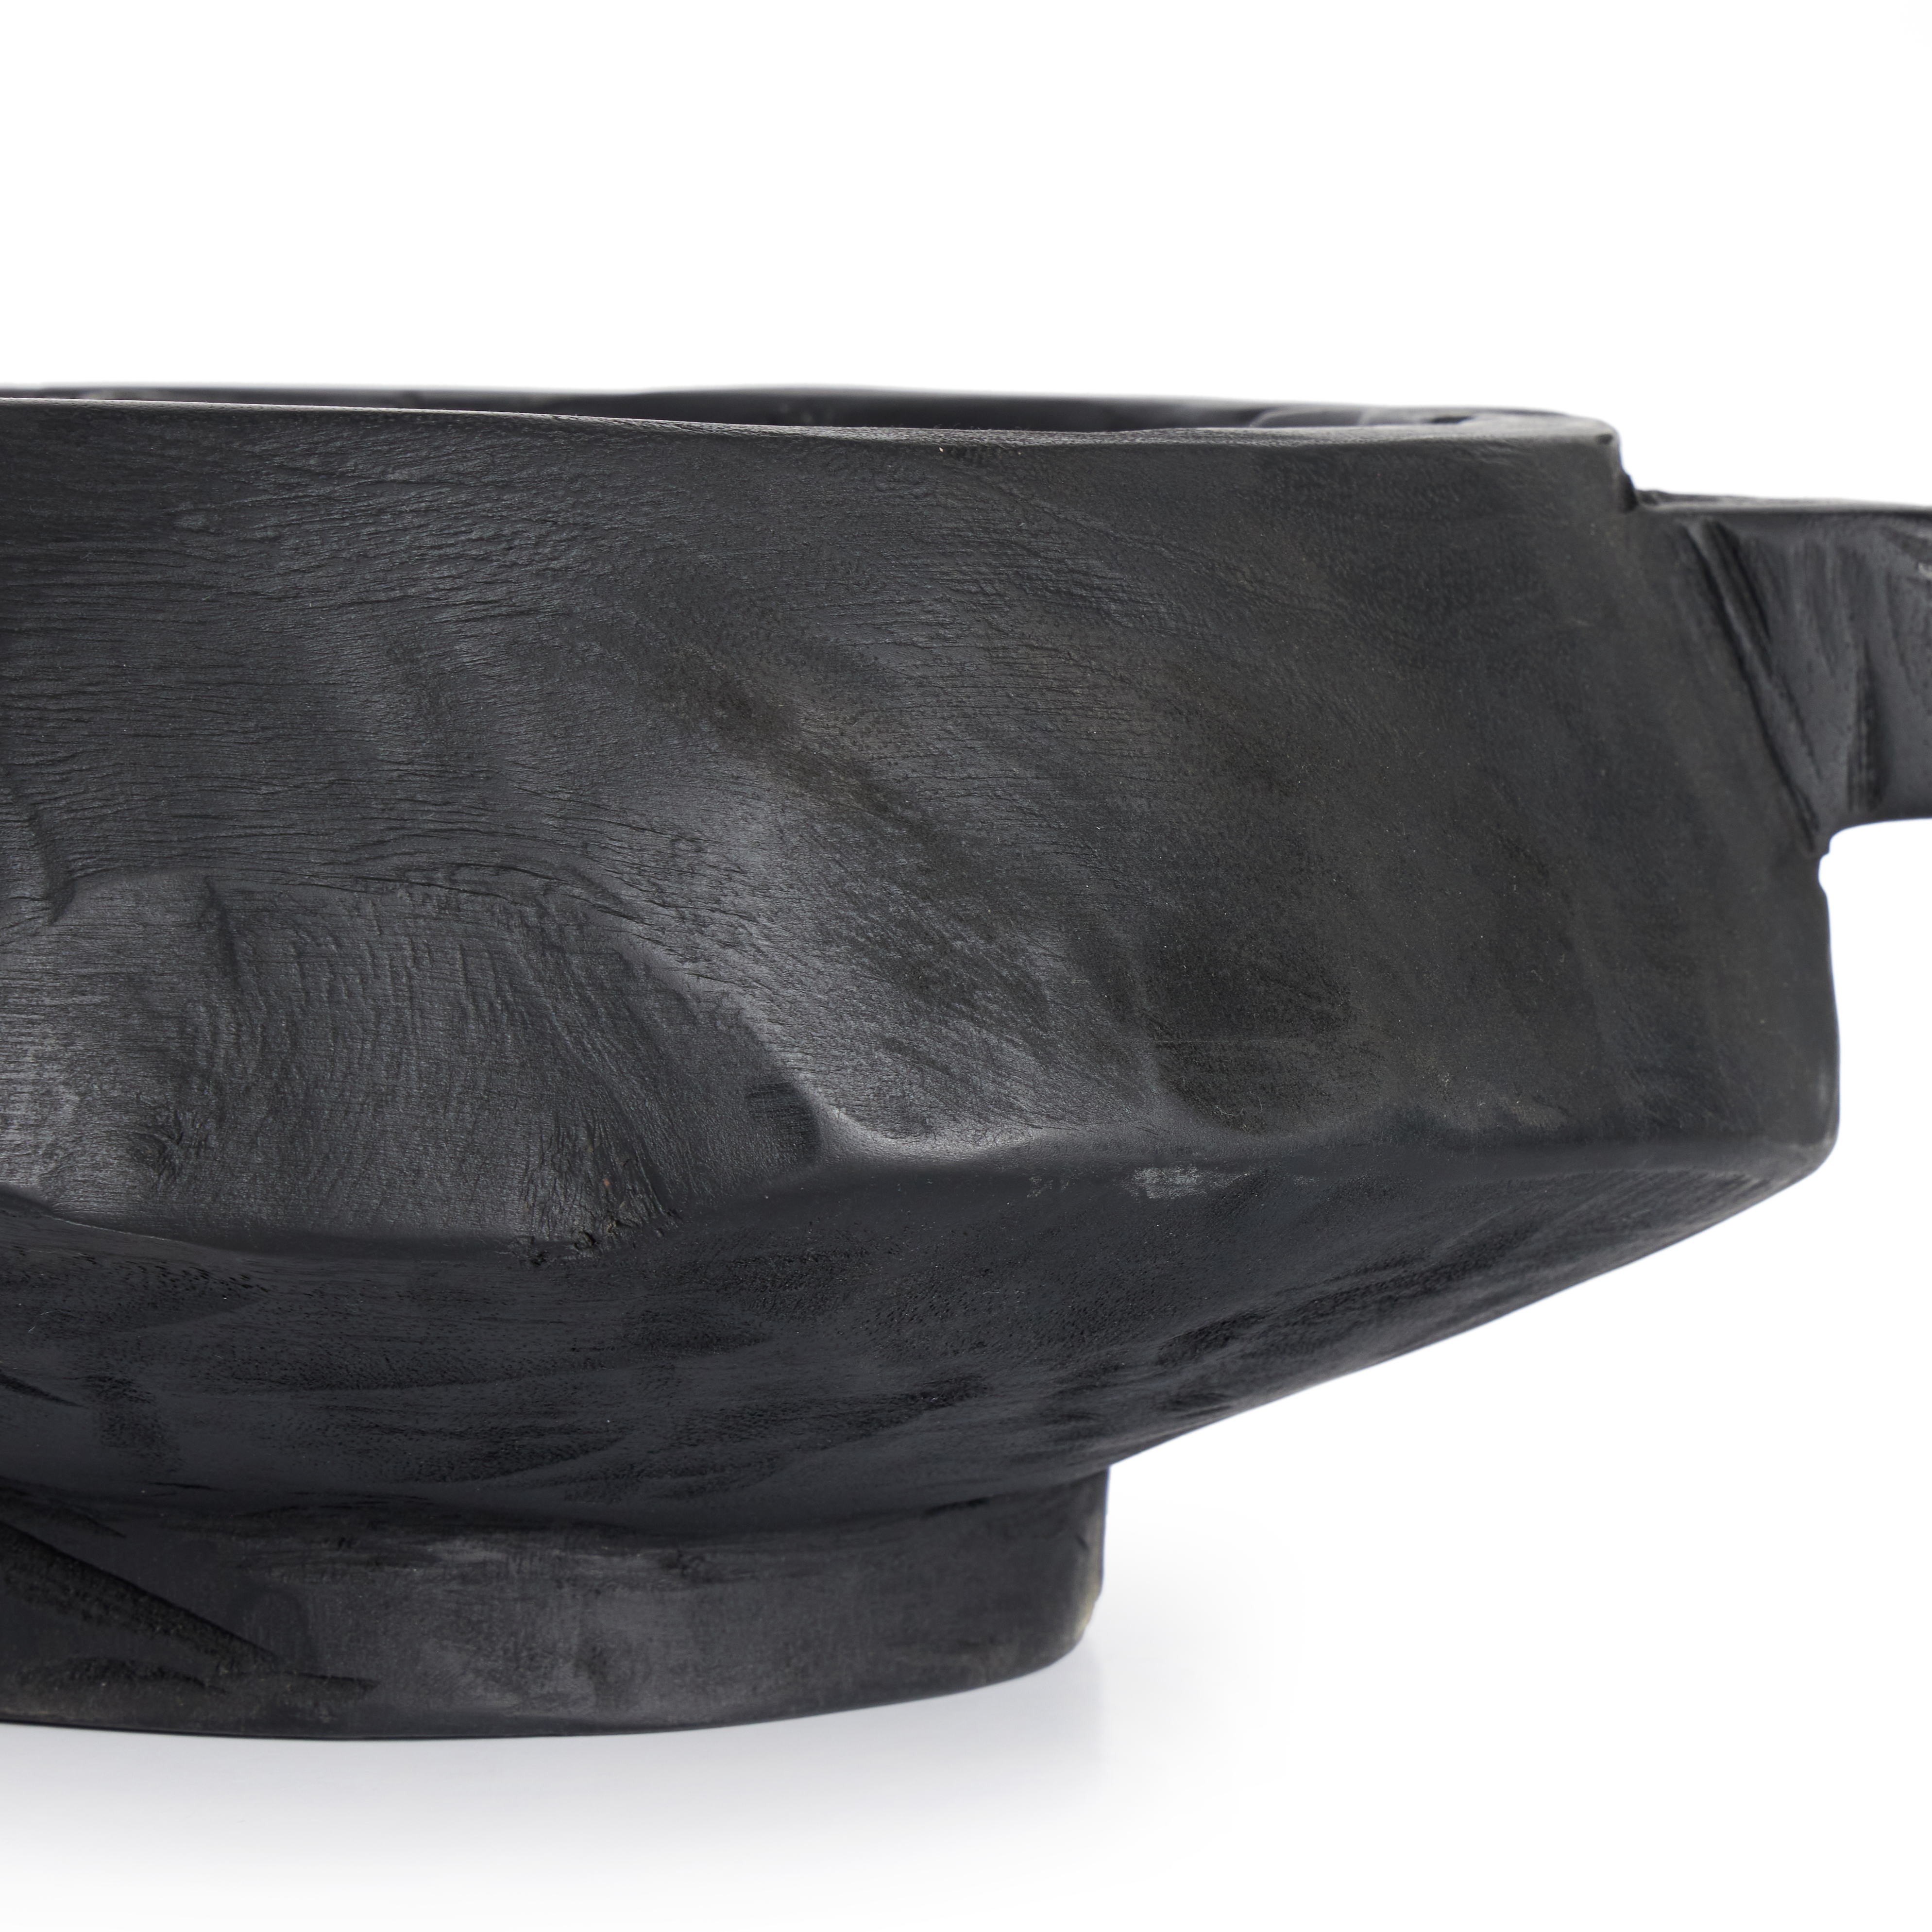 Shaw Bowl-Carbonized Black - Image 6